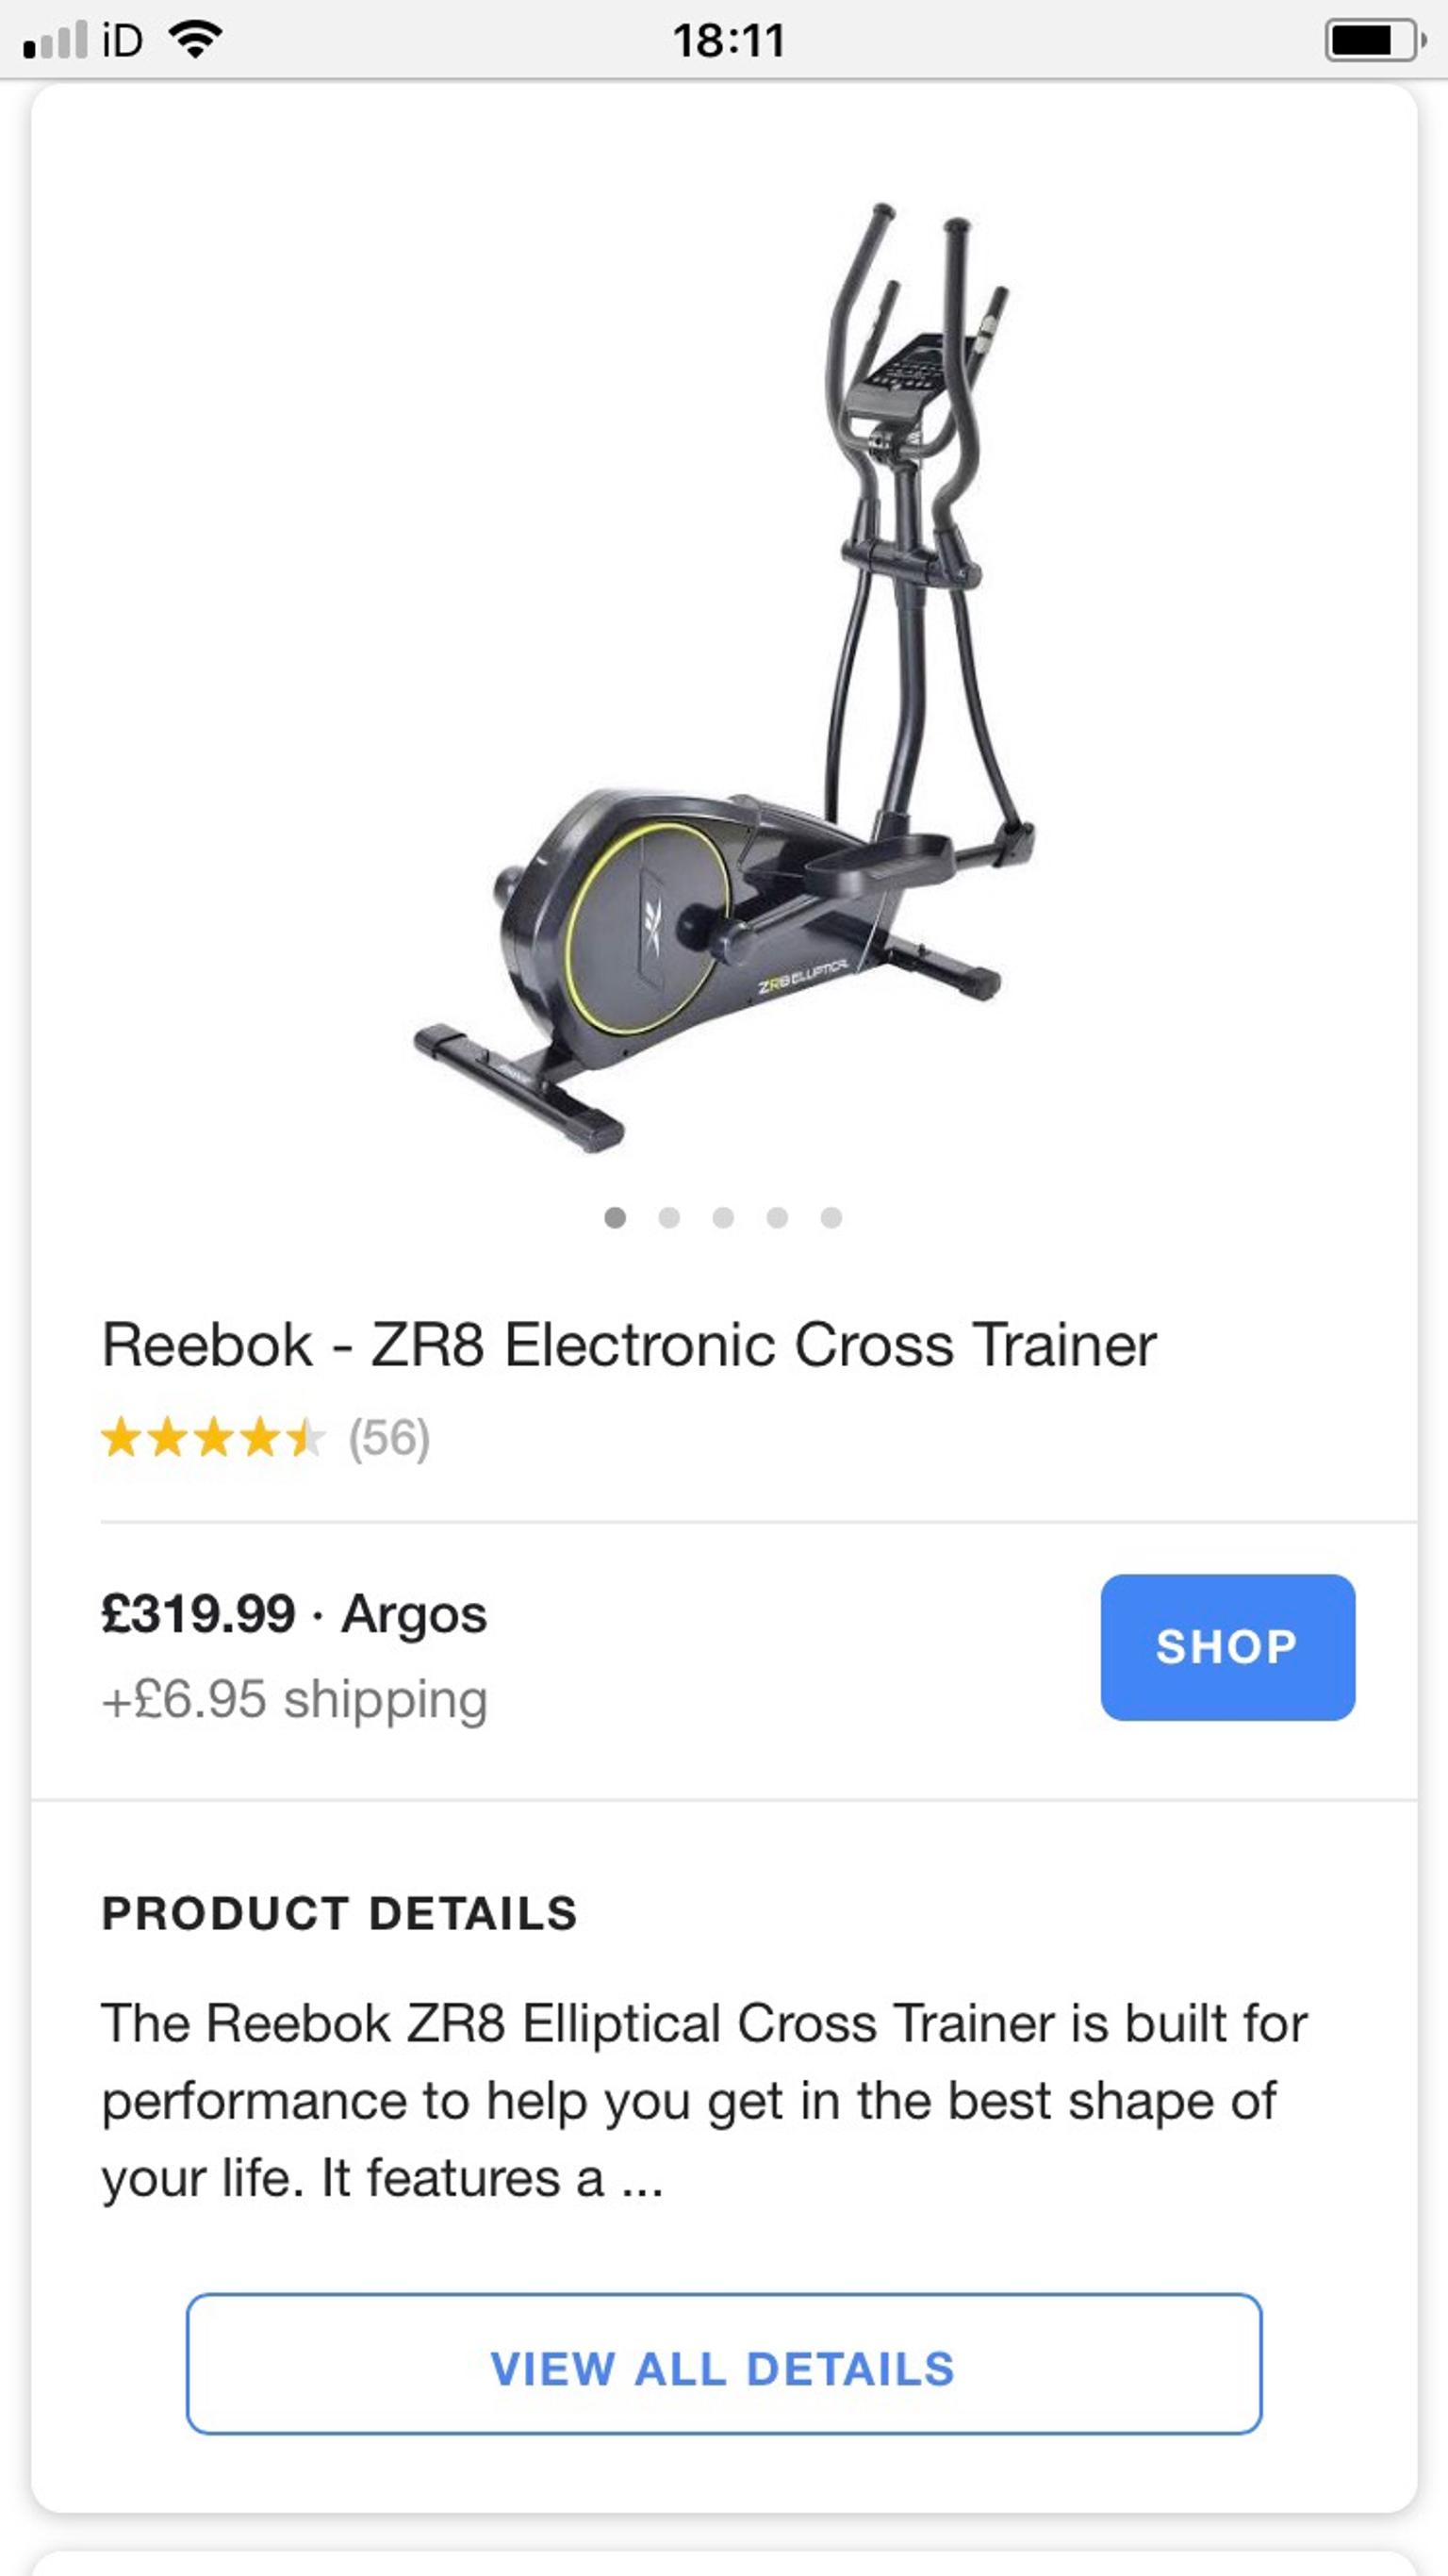 reebok zr8 elliptical cross trainer